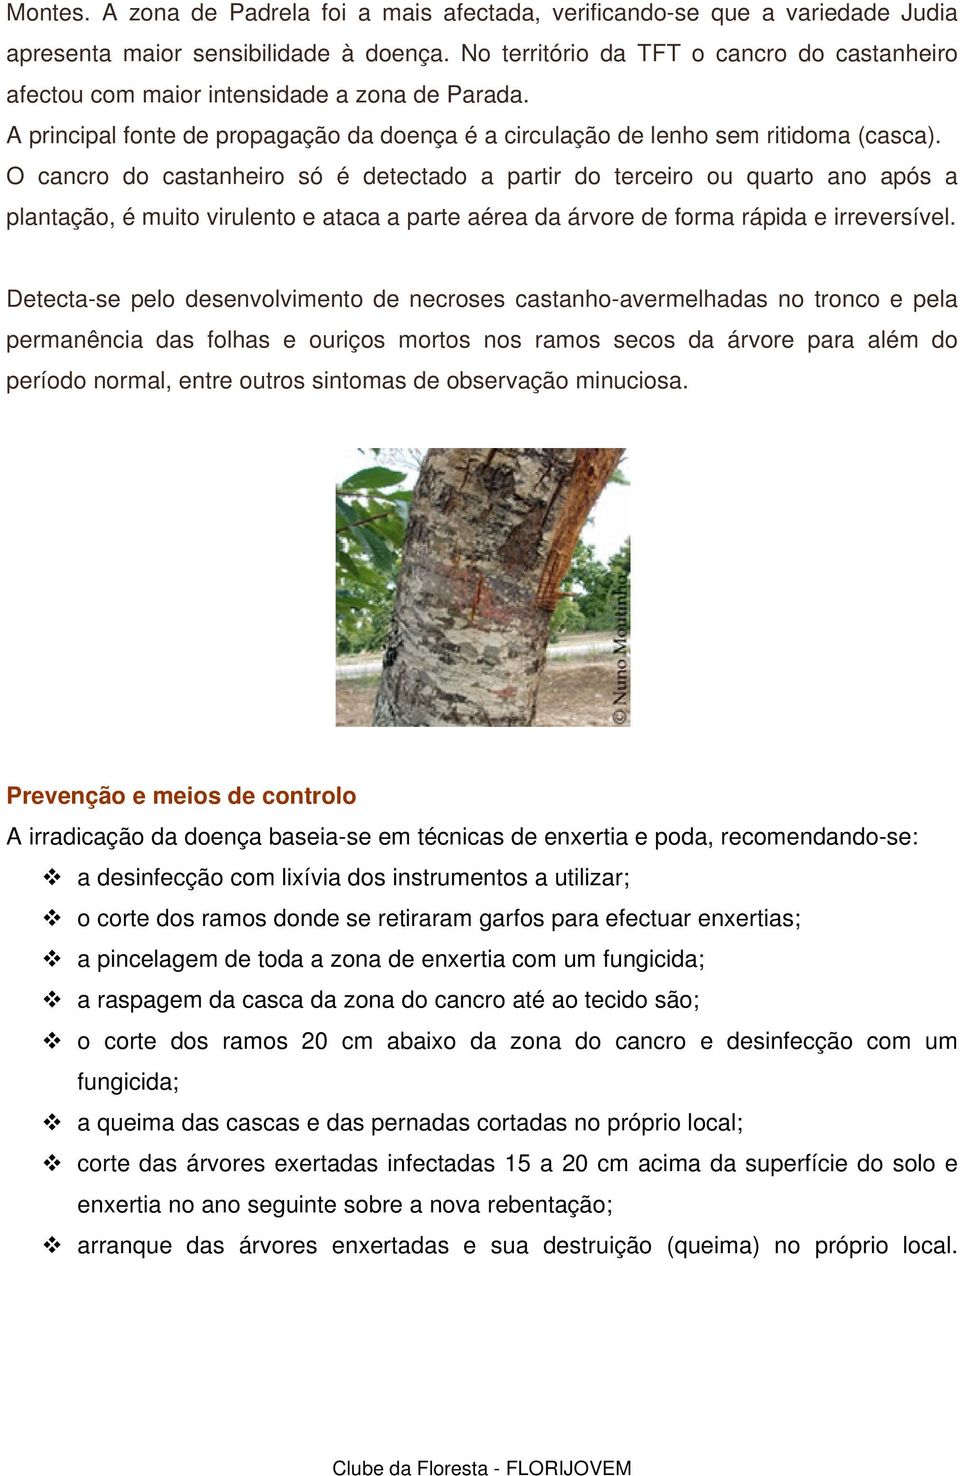 O cancro do castanheiro só é detectado a partir do terceiro ou quarto ano após a plantação, é muito virulento e ataca a parte aérea da árvore de forma rápida e irreversível.